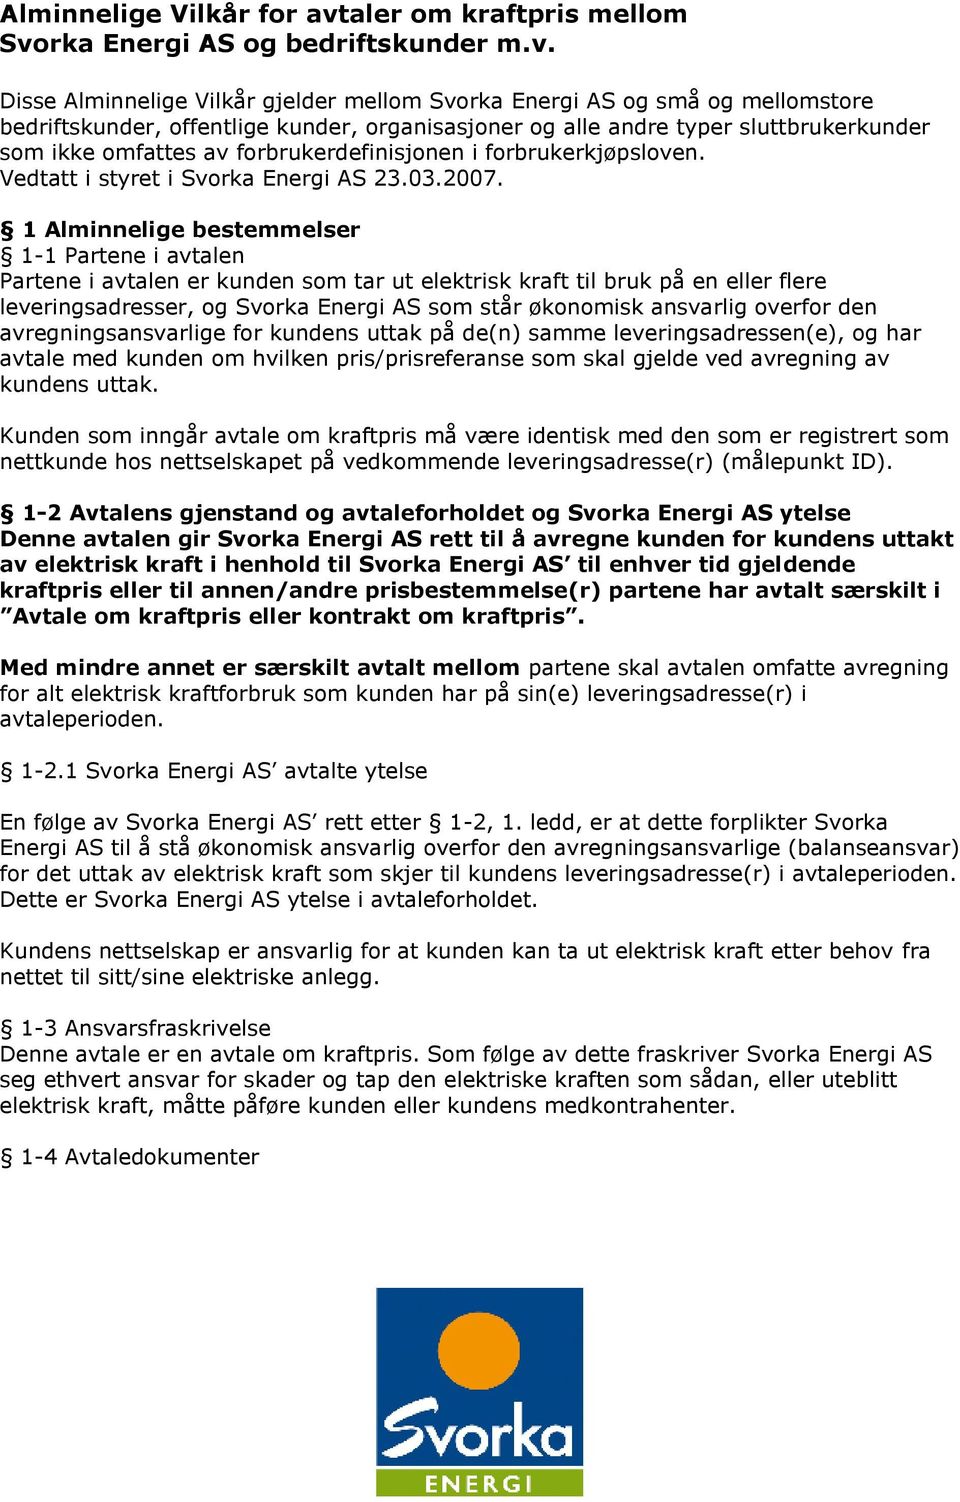 rka Energi AS og bedriftskunder m.v.